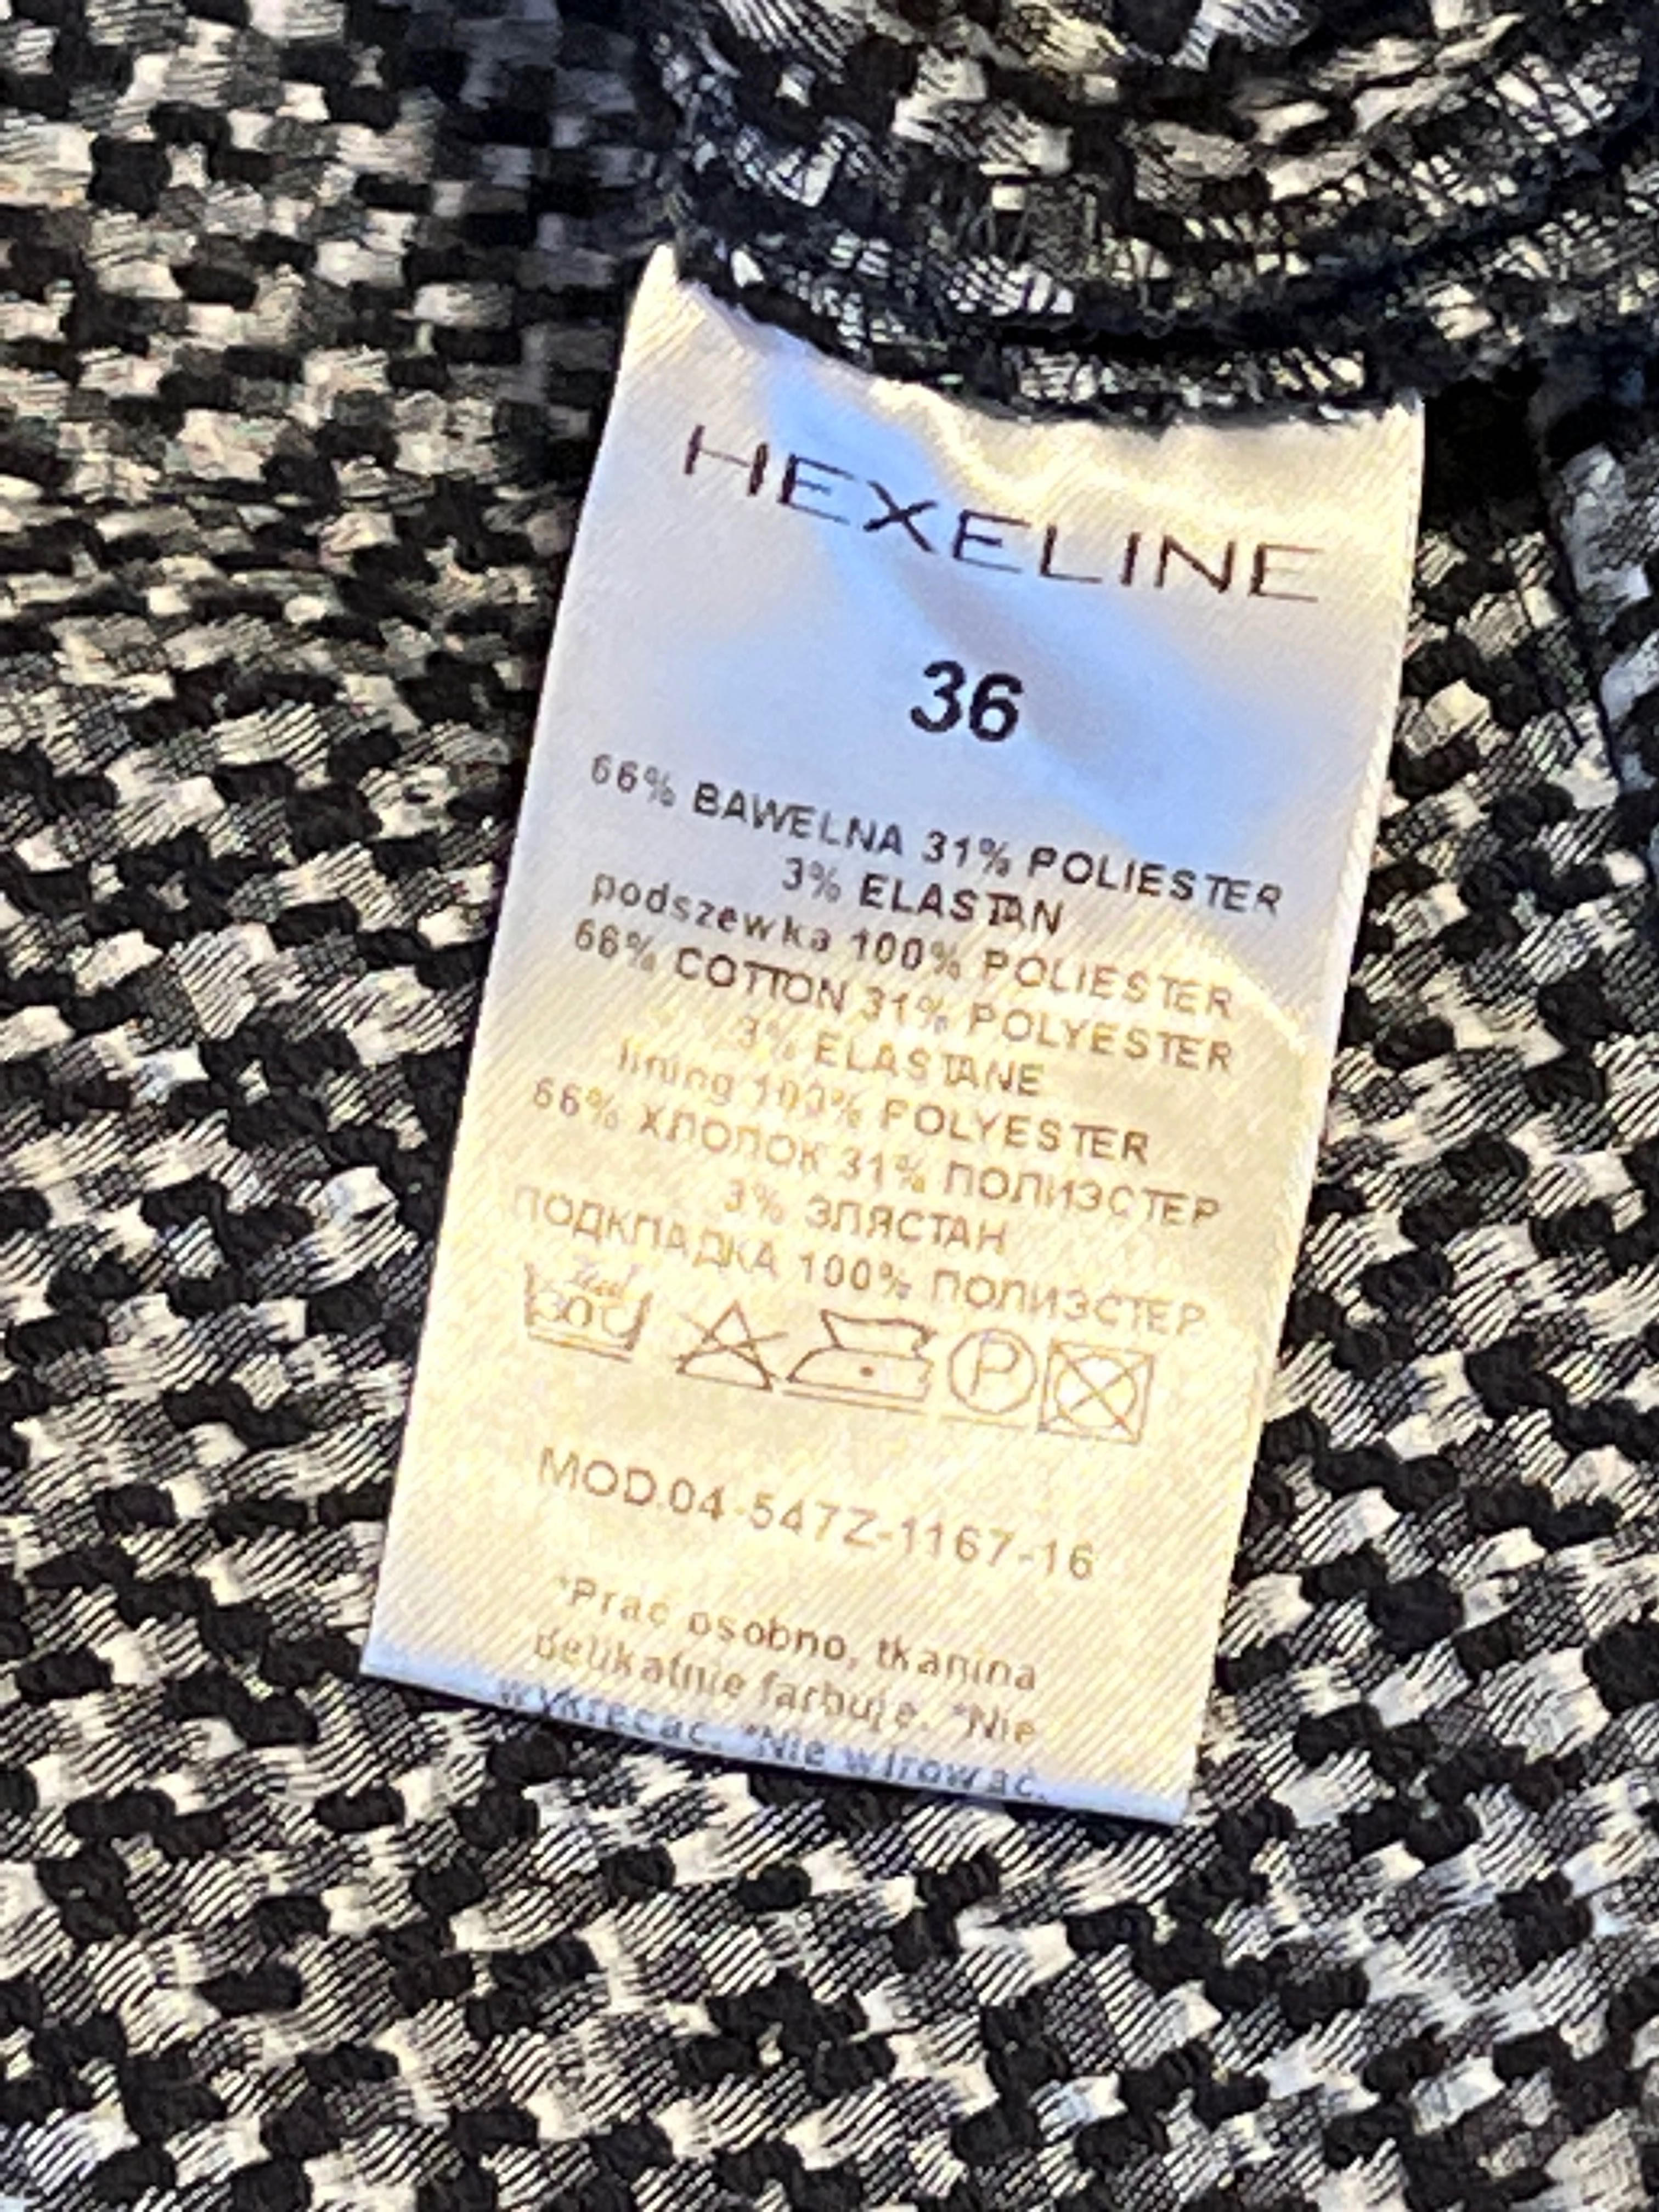 Spodnie damskie marki Hexeline, rozmiar 36.